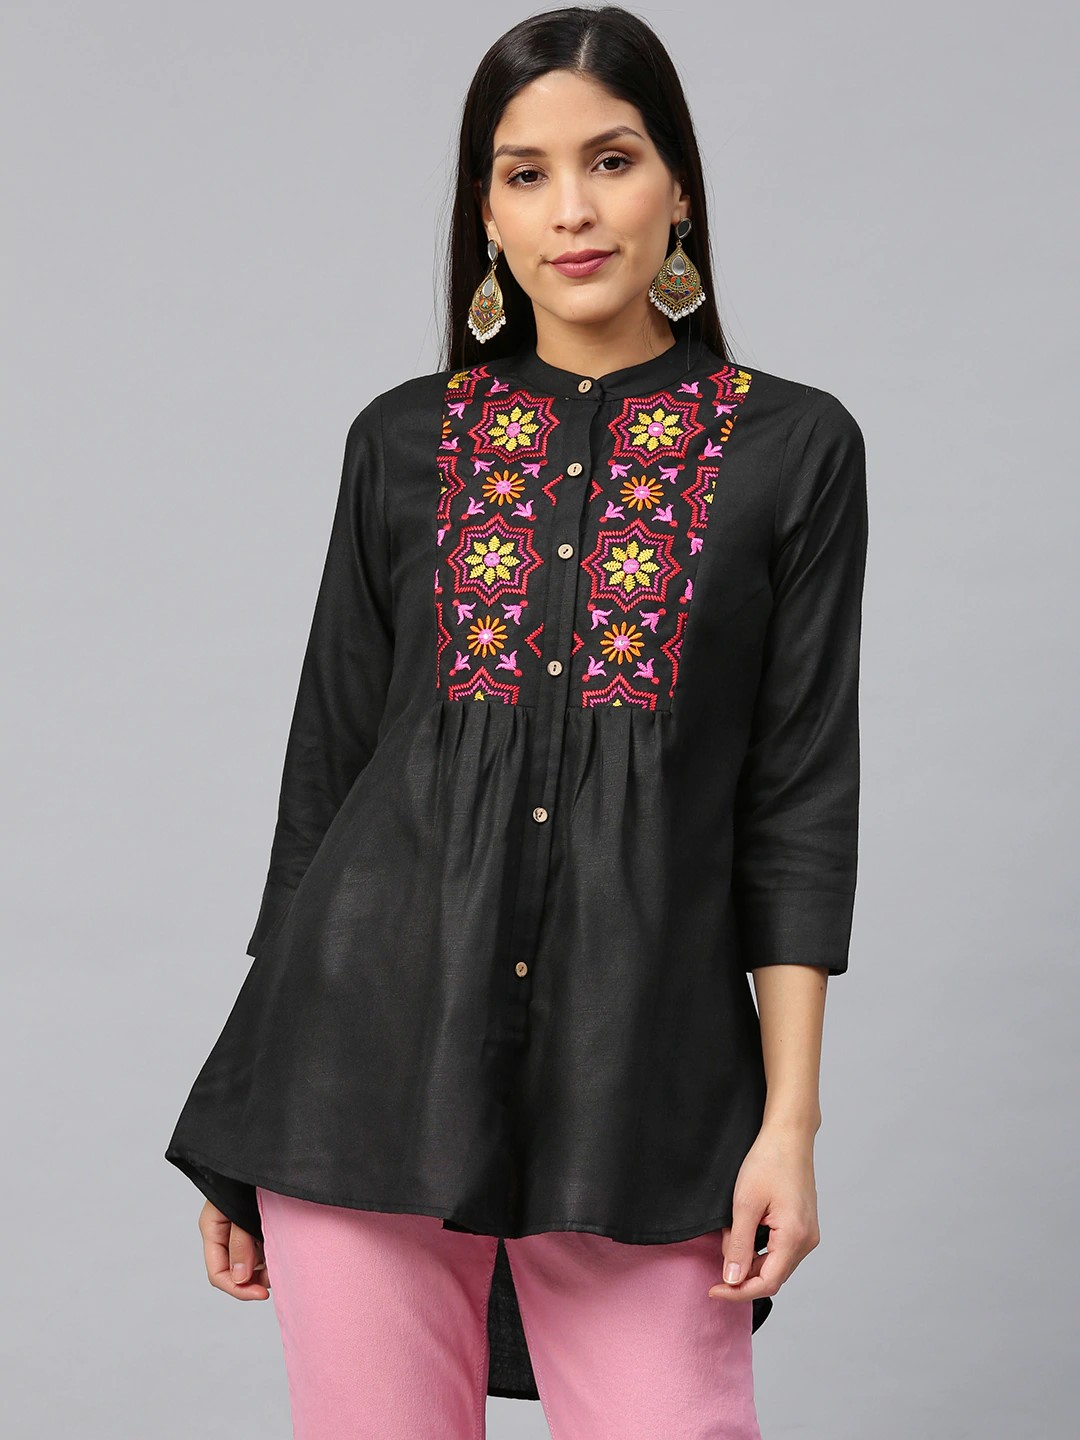 Buy Powder Pink High Low Kurti In Cotton Silk Online - Kalki Fashion